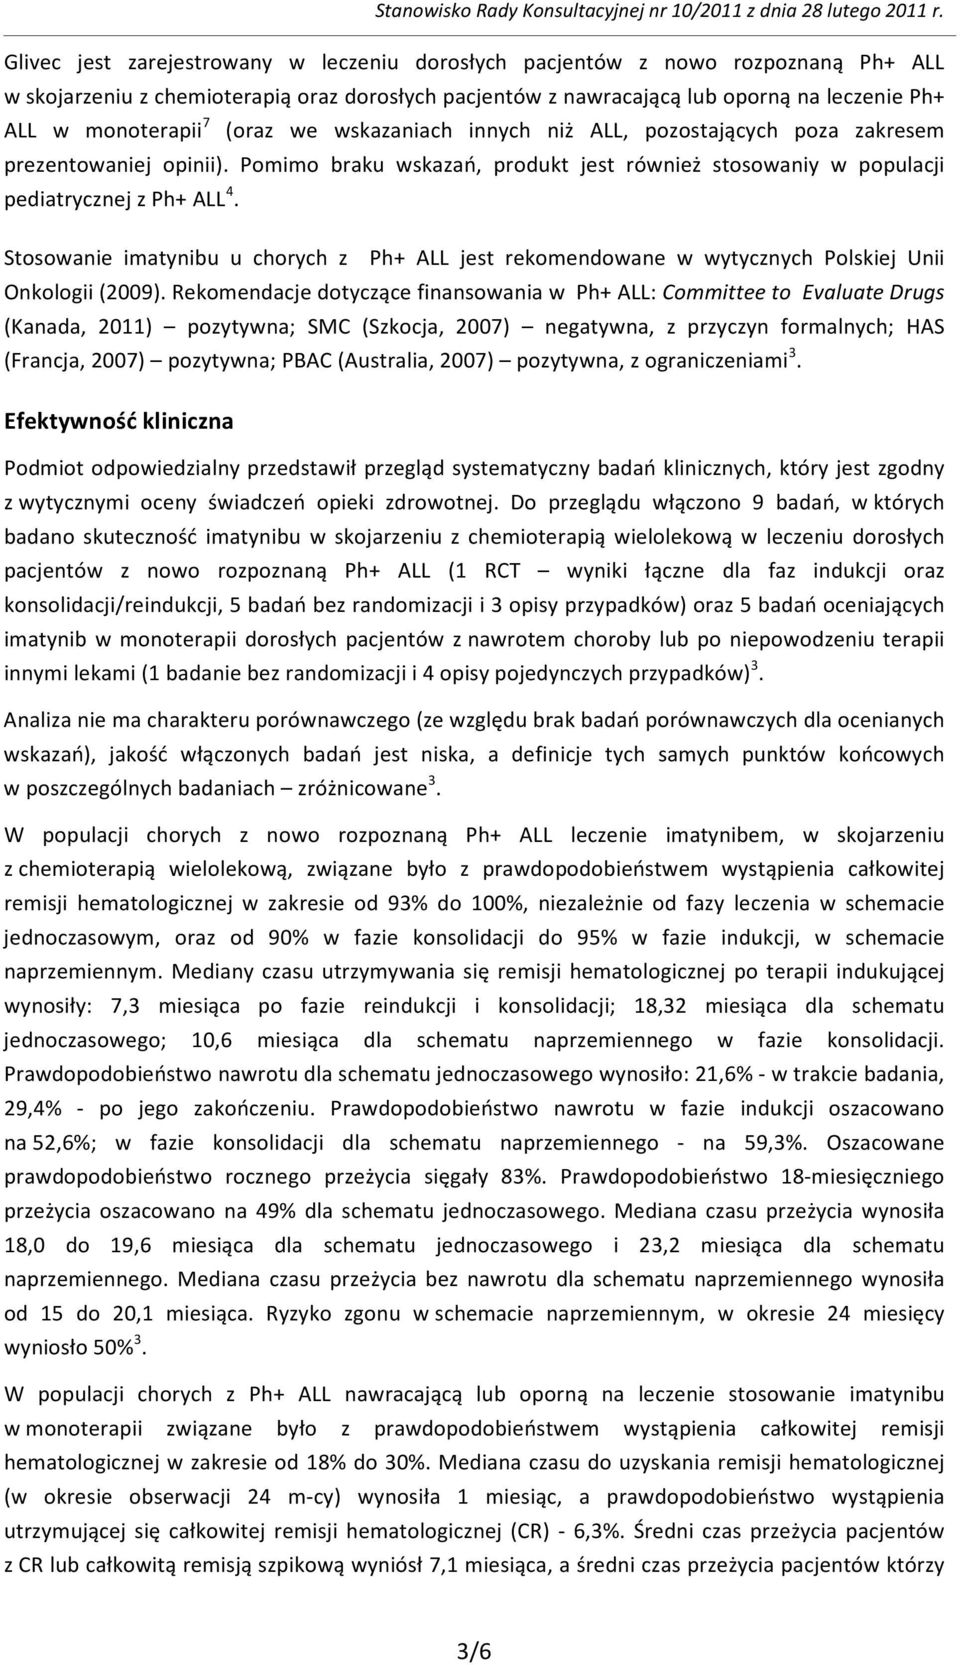 Stosowanie imatynibu u chorych z Ph+ ALL jest rekomendowane w wytycznych Polskiej Unii Onkologii (2009).